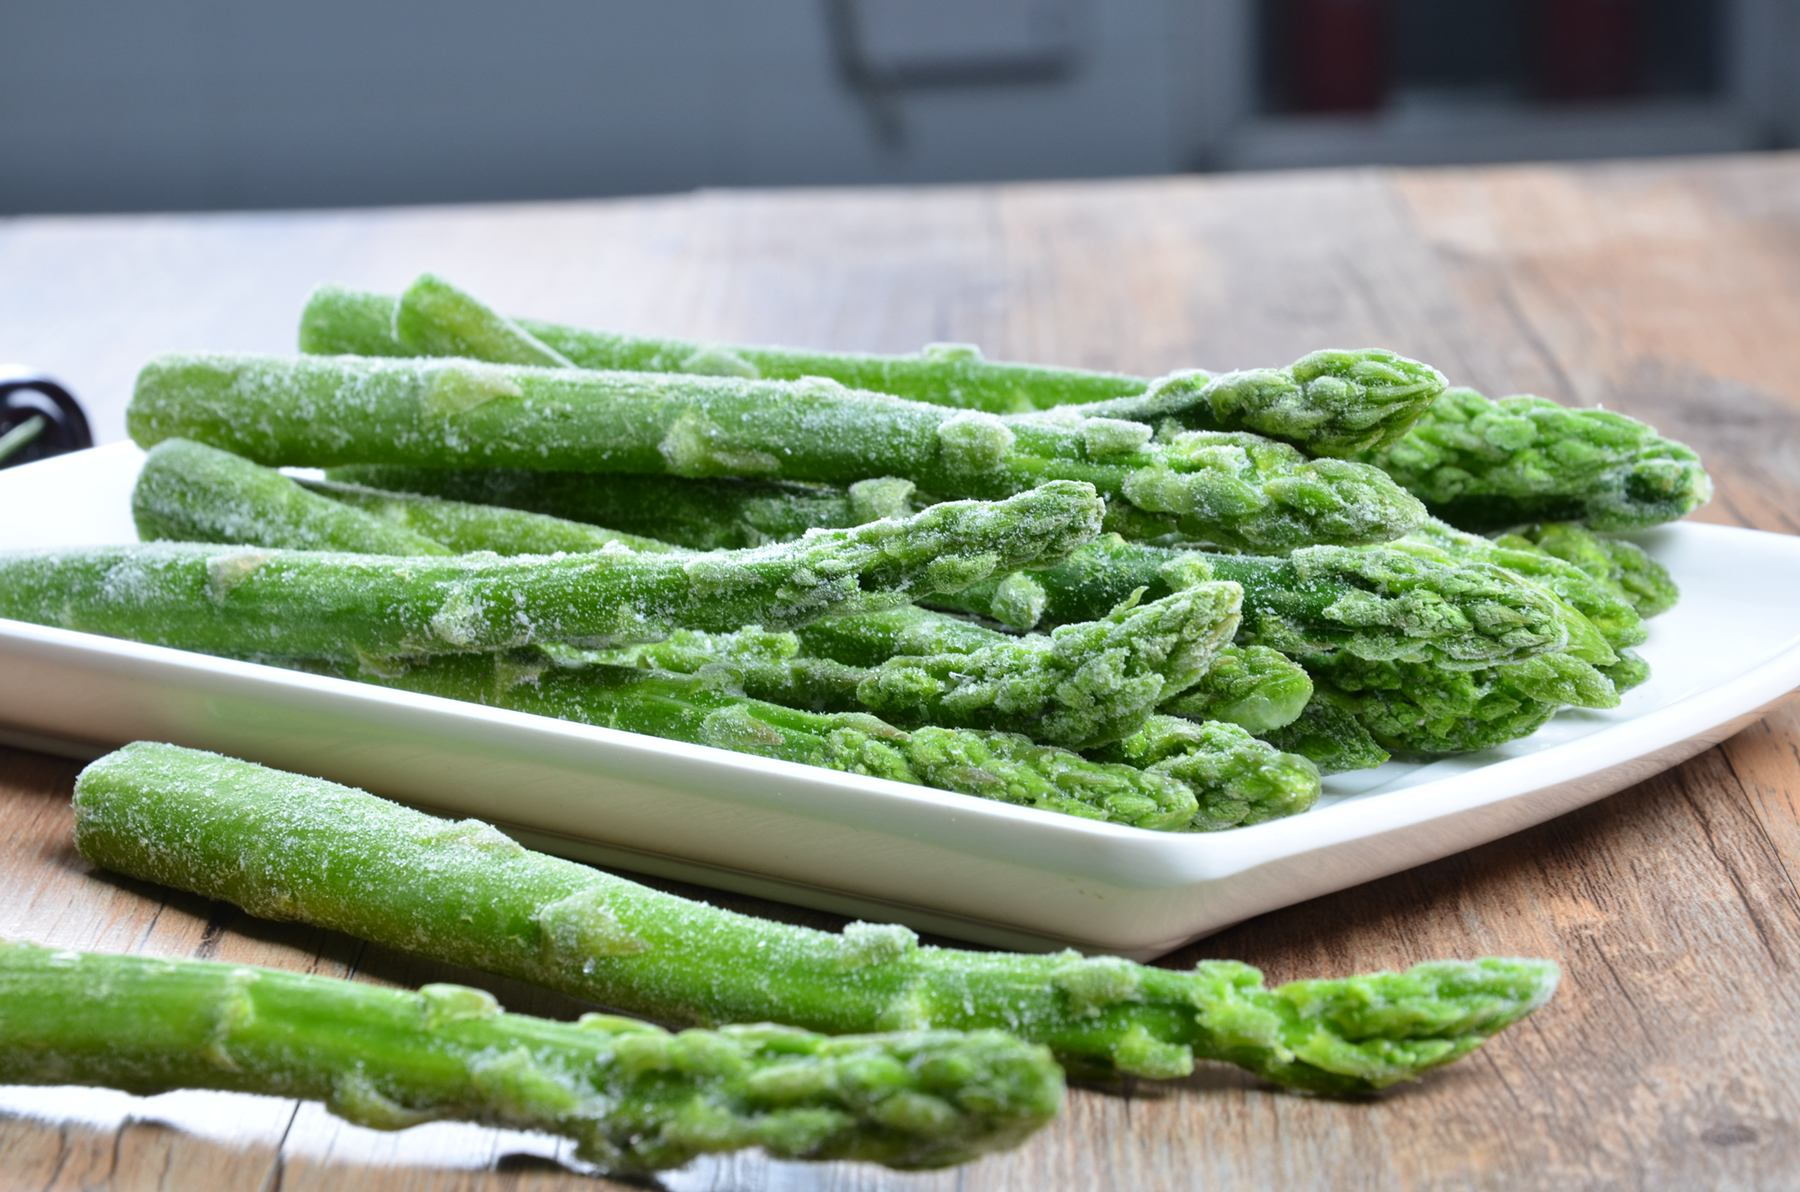 Frozen(IQF) asparagus